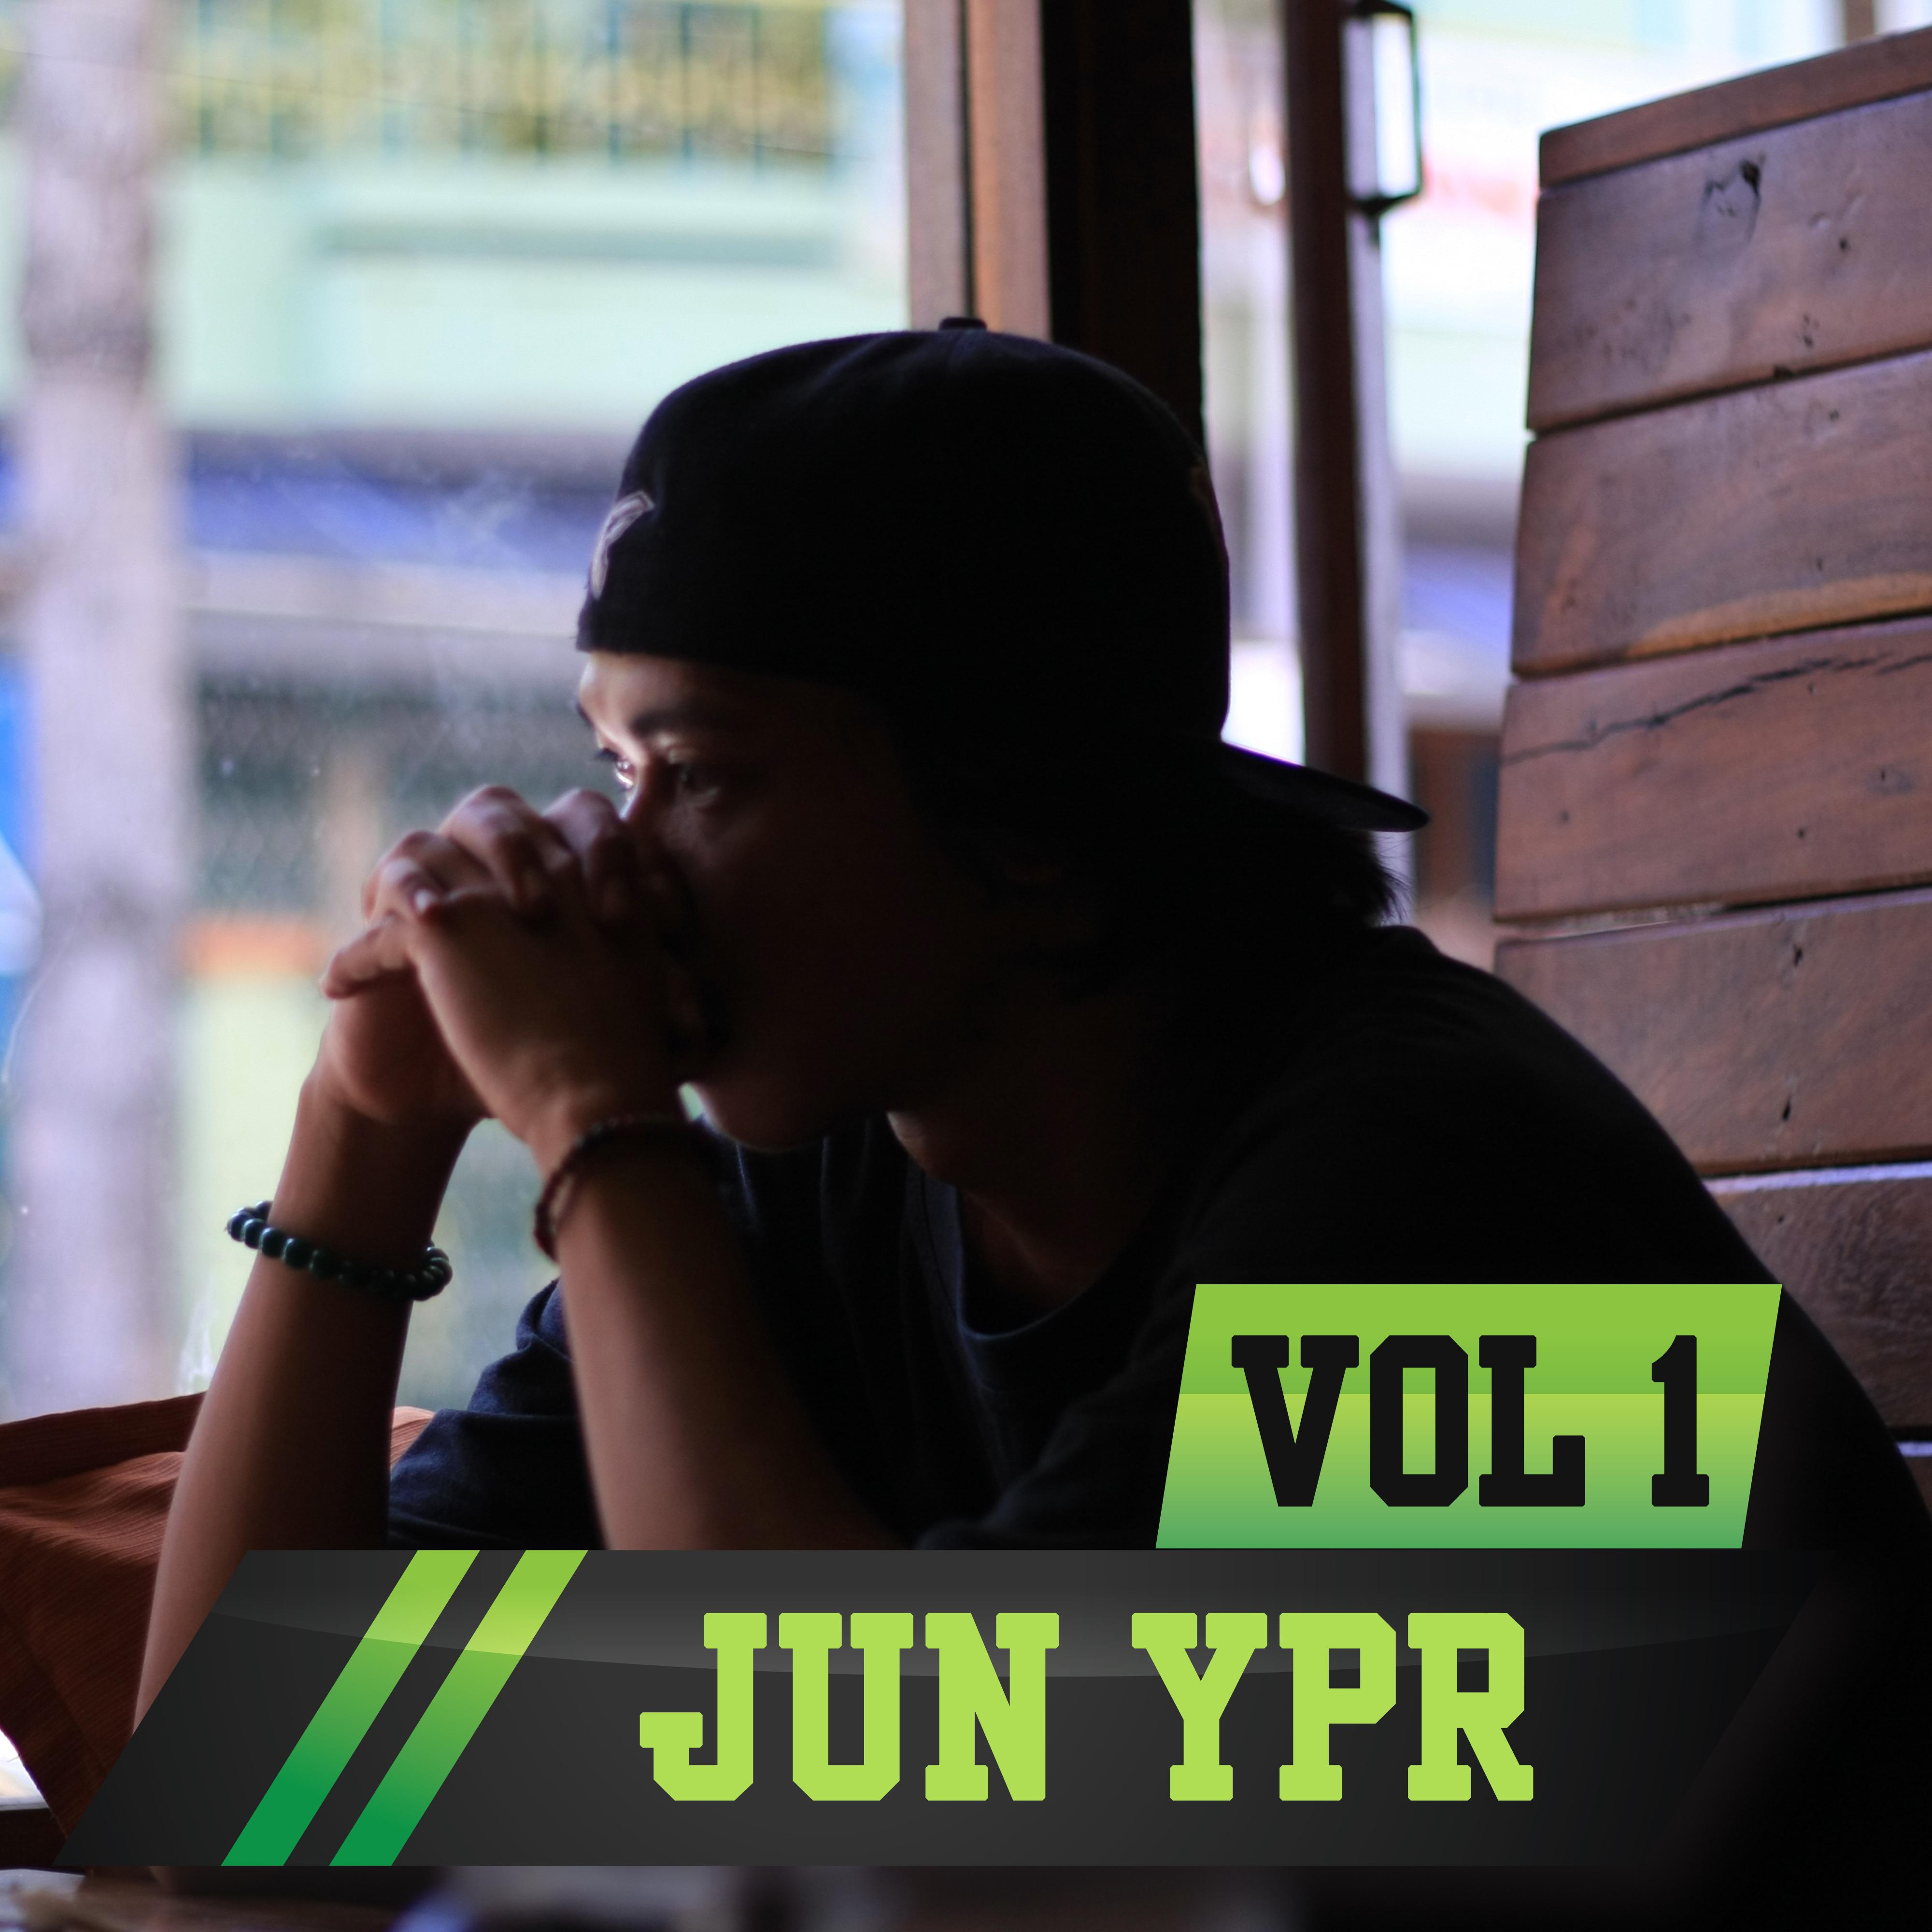 Jun YPR, Vol. 1